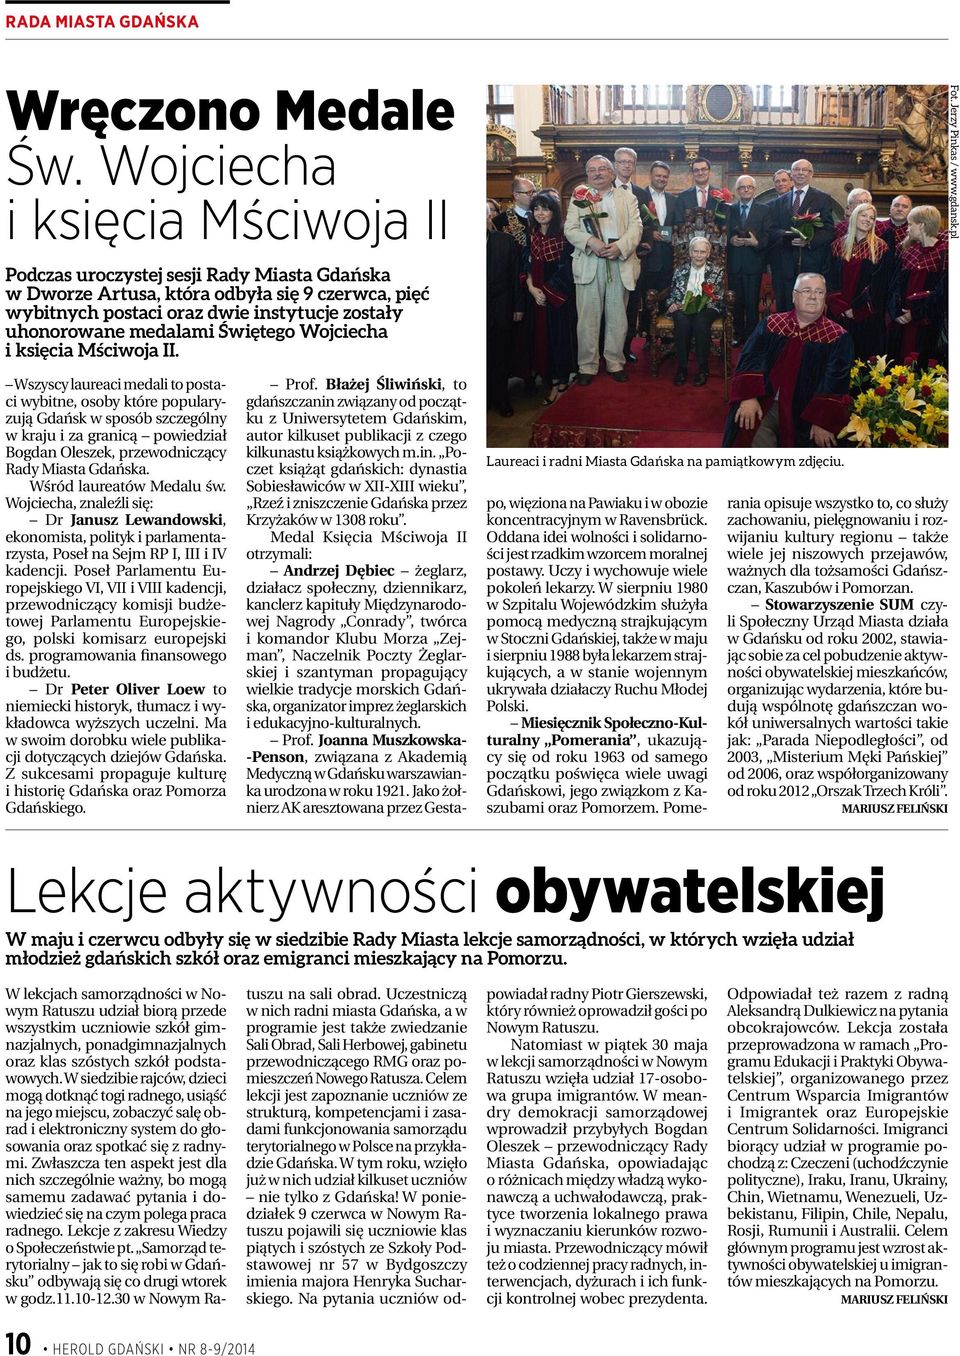 Mściwoja II. Wszyscy laureaci medali to postaci wybitne, osoby które popularyzują Gdańsk w sposób szczególny w kraju i za granicą powiedział Bogdan Oleszek, przewodniczący Rady Miasta Gdańska.